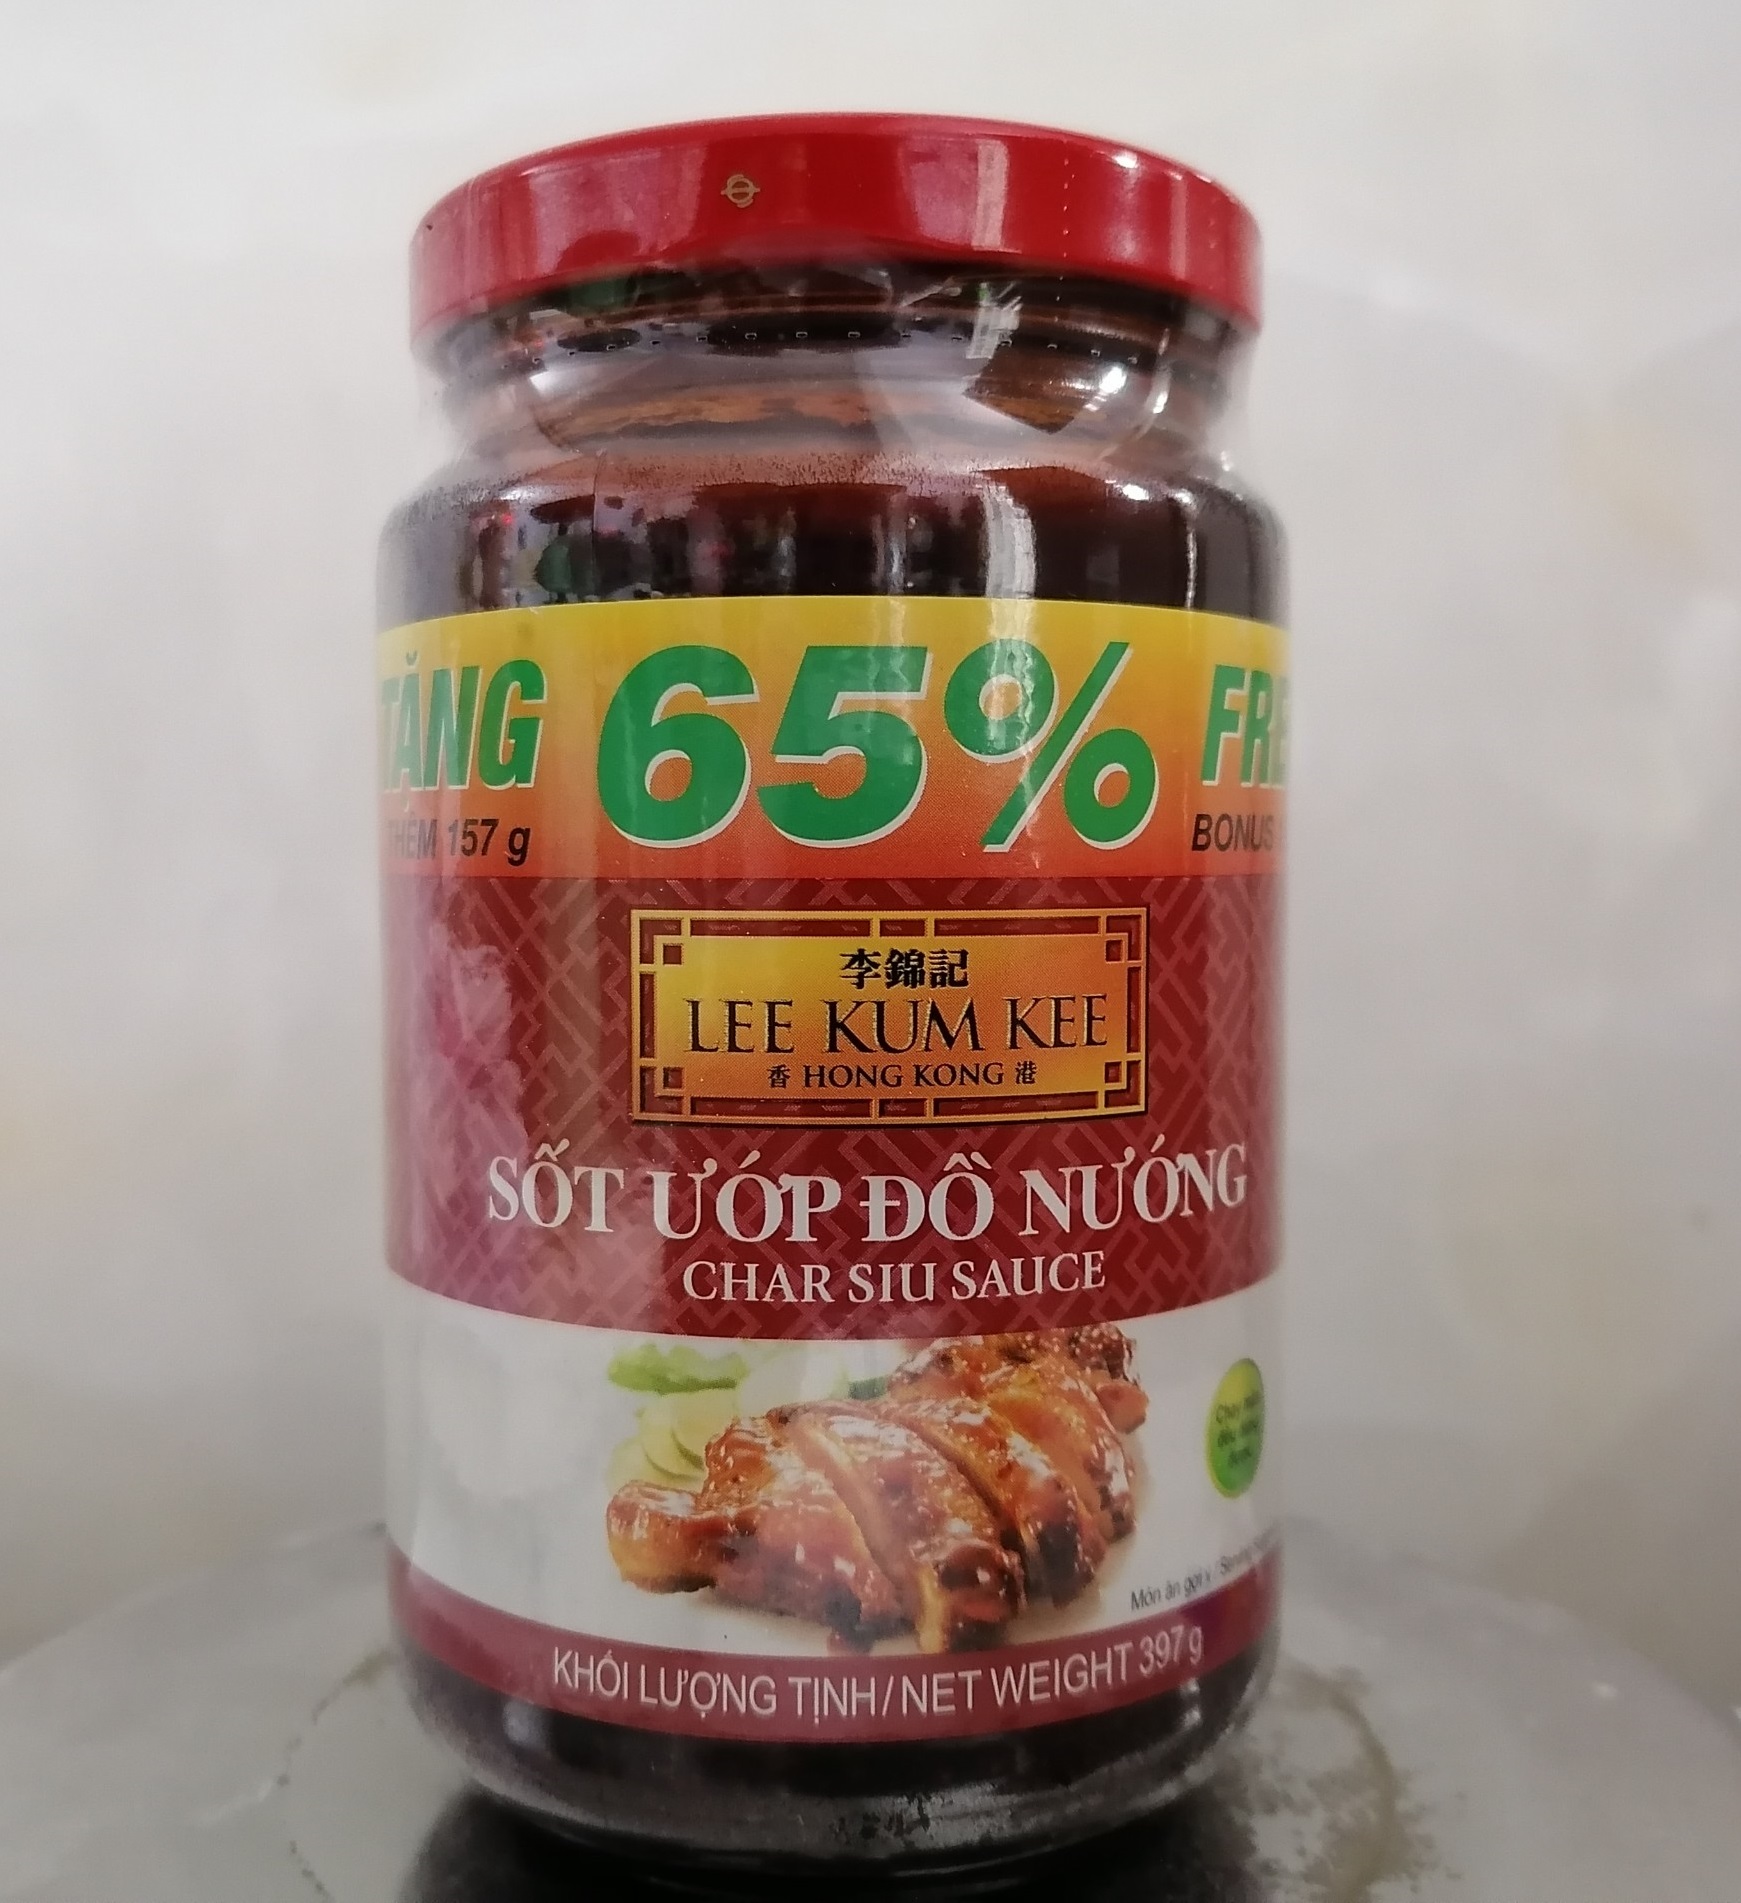 Lọ 397g 65% Free XỐT ƯỚP ĐỒ NƯỚNG China LEE KUM KEE Char Siu Sauce limited